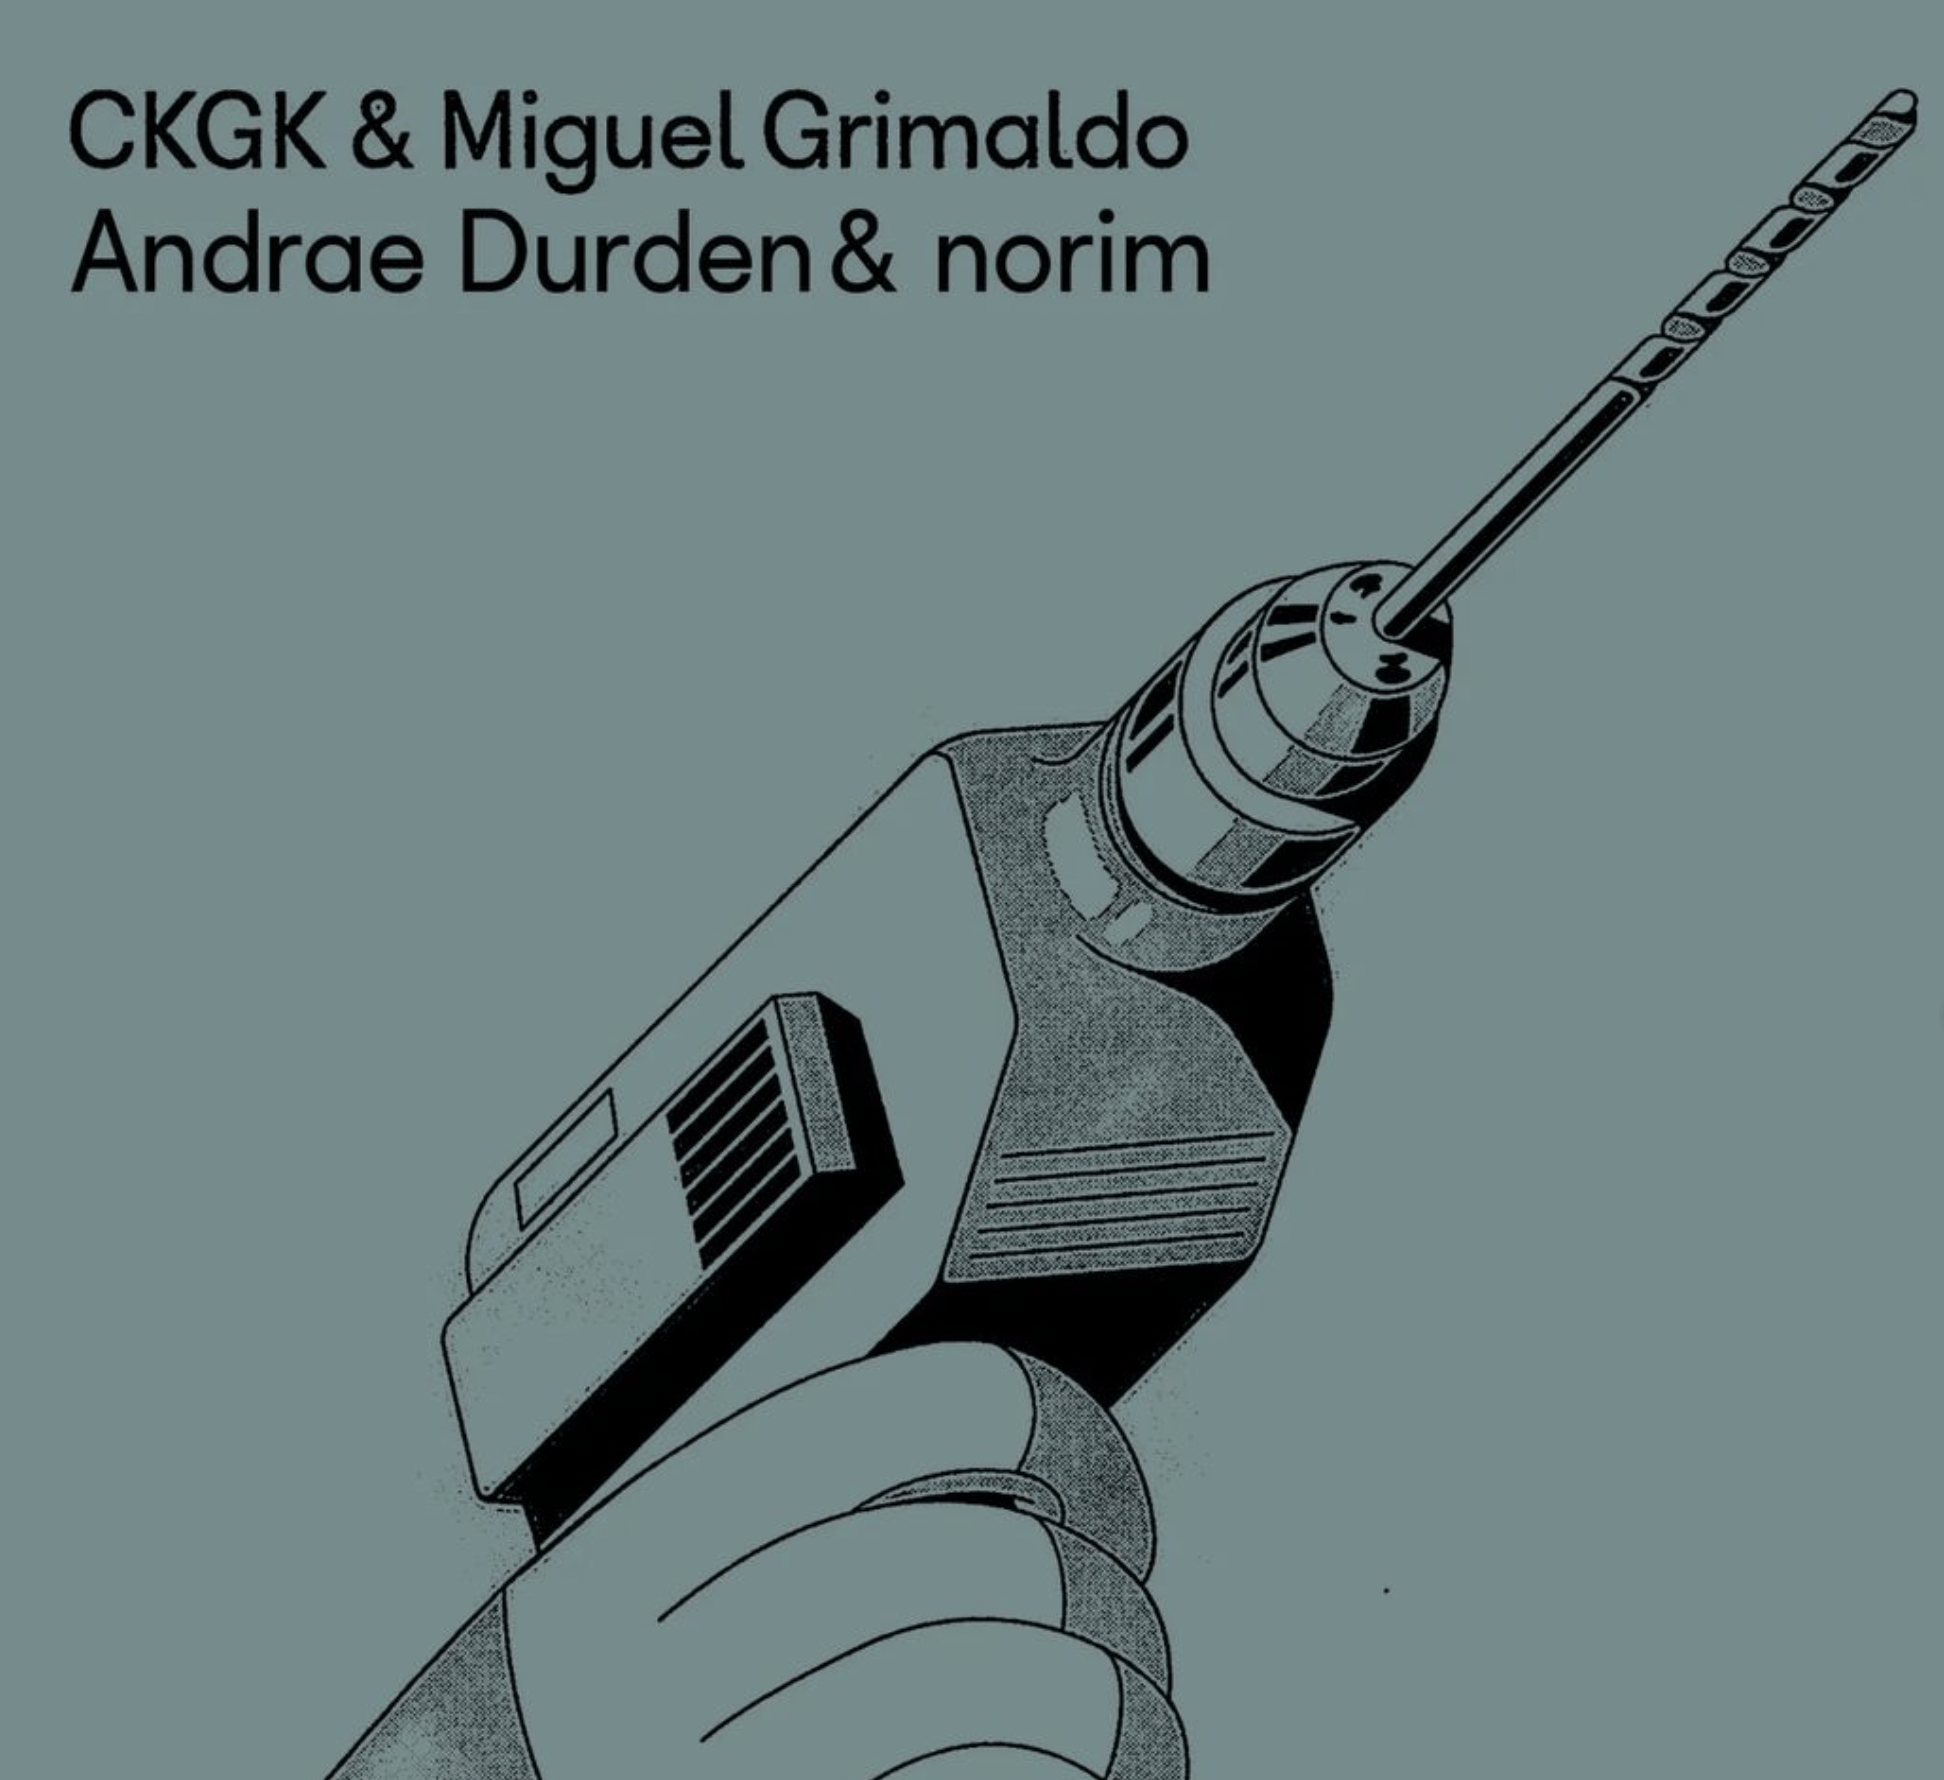 CKGK + Miguel Grimaldo + Andrae Durden & Norim